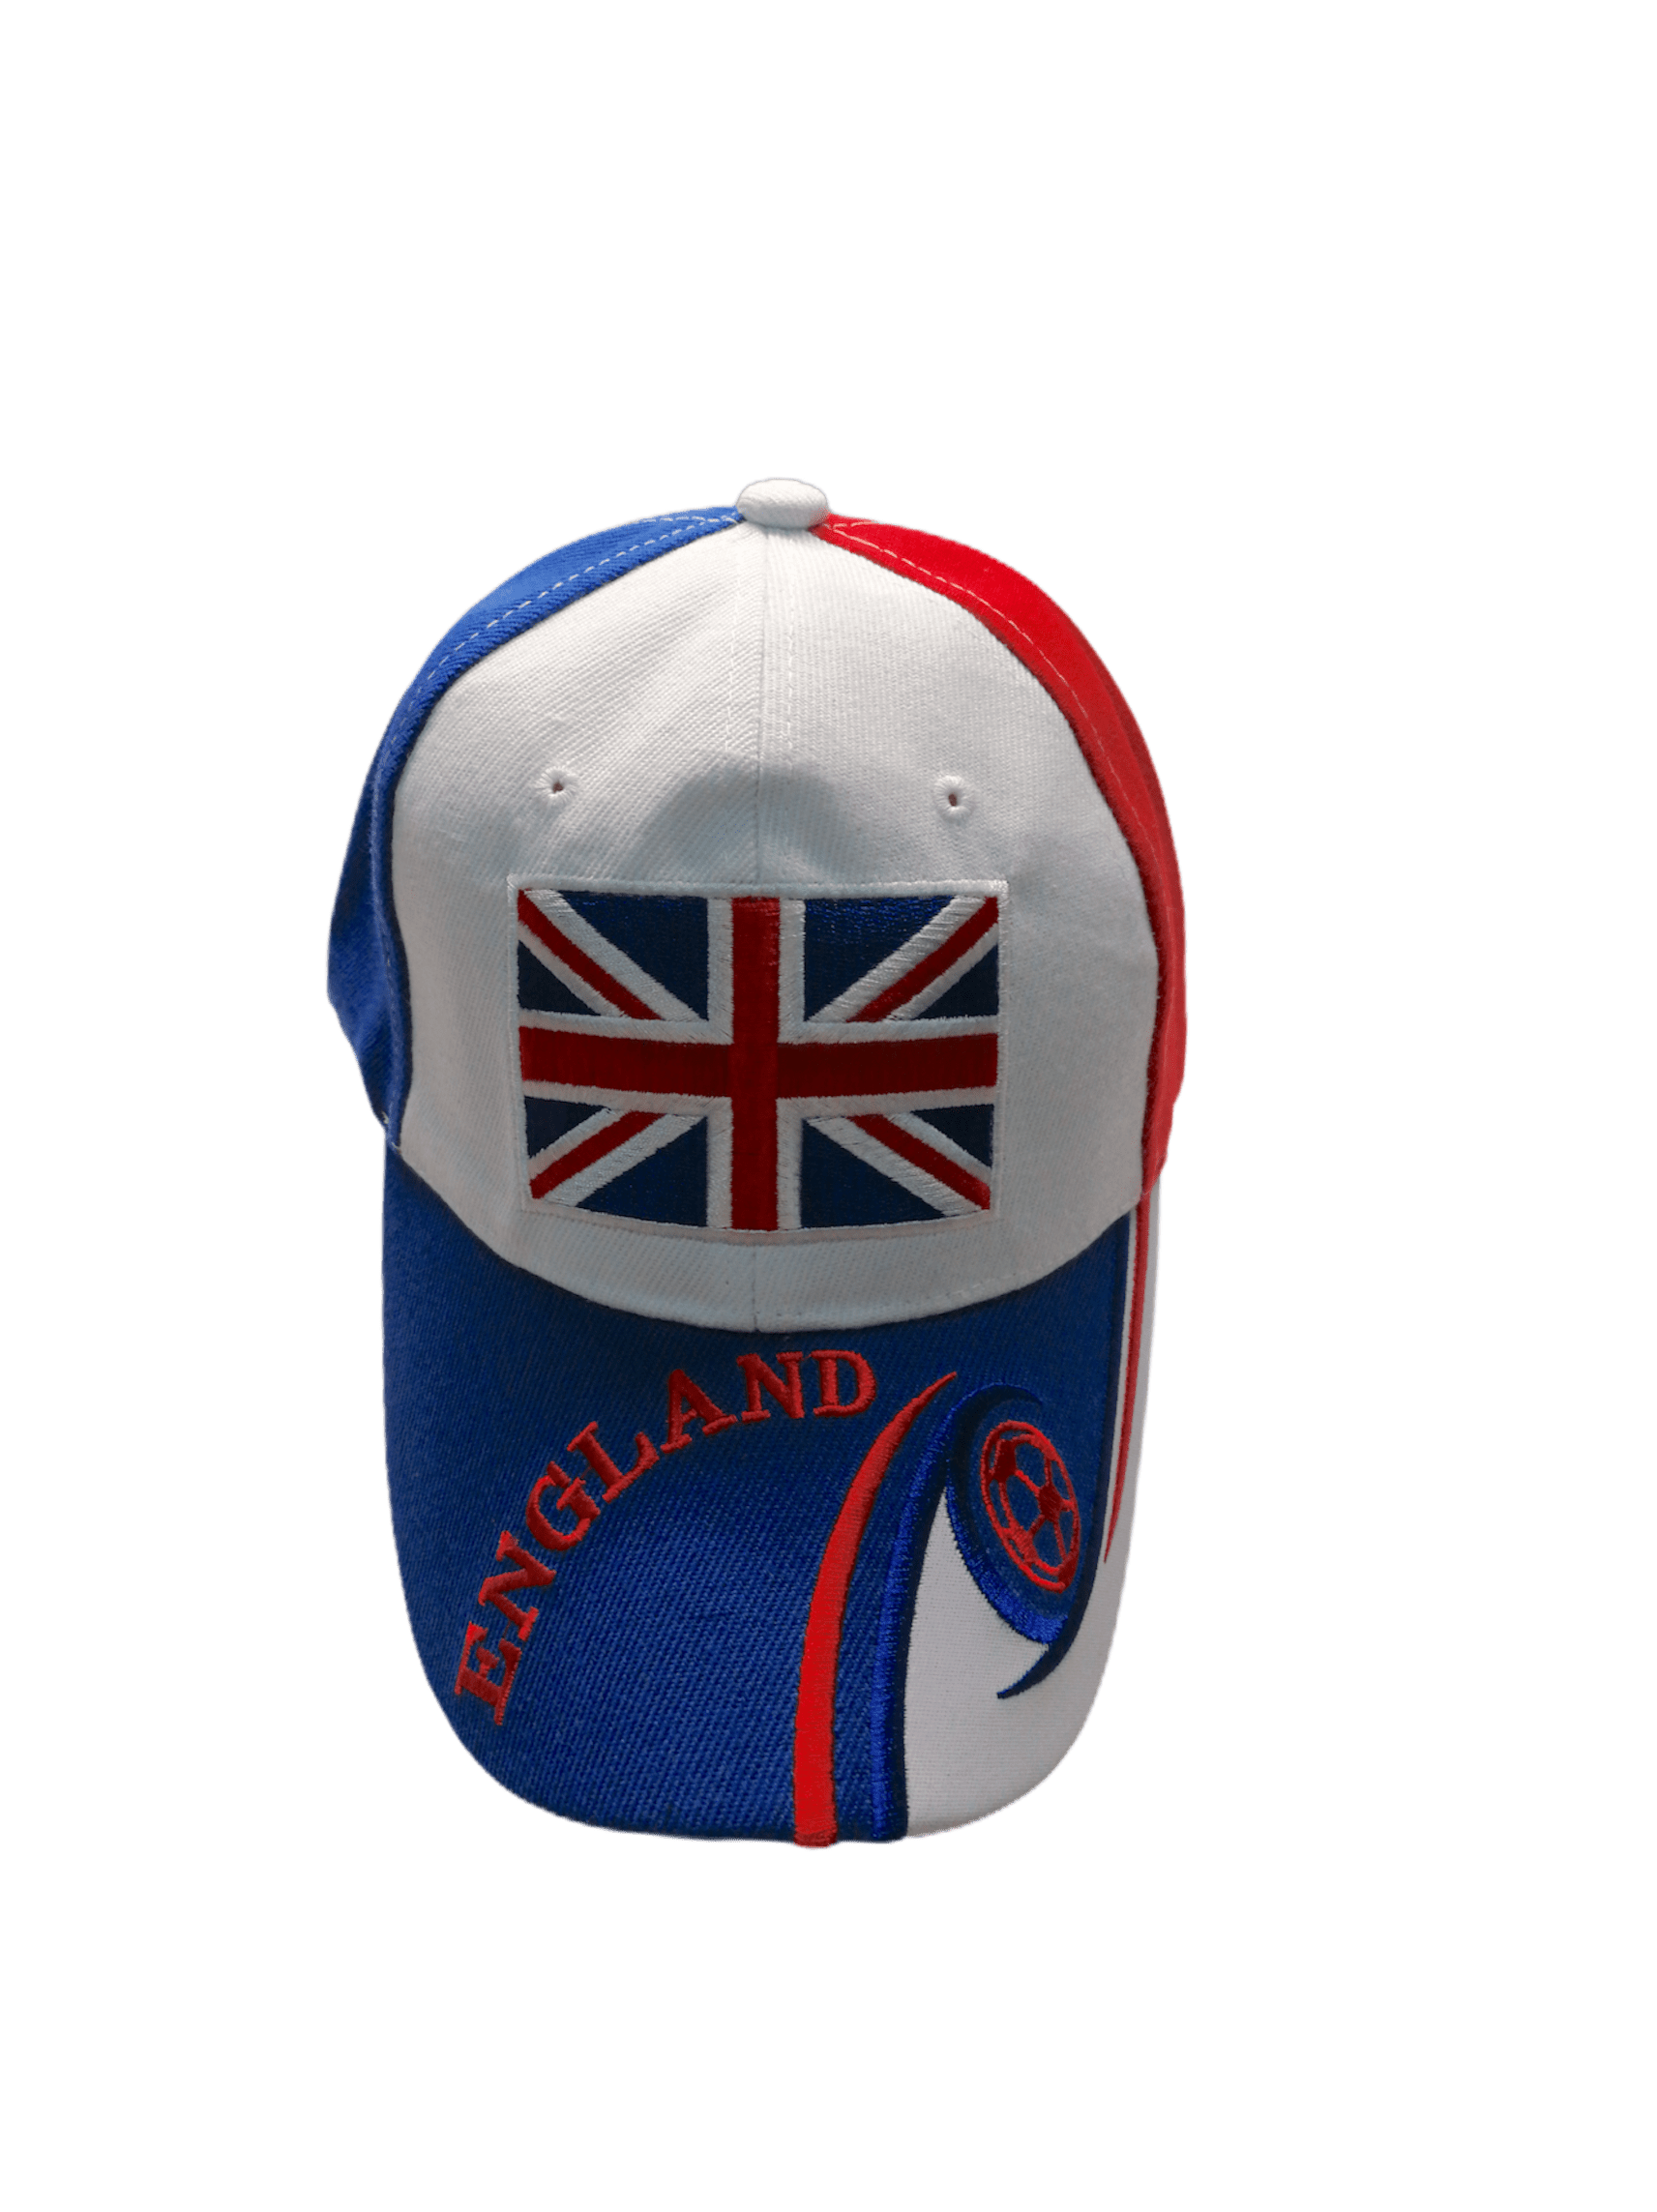 Casquettes drapeau Royaume Uni   (x6)       2,50€/unité | Grossiste-pro